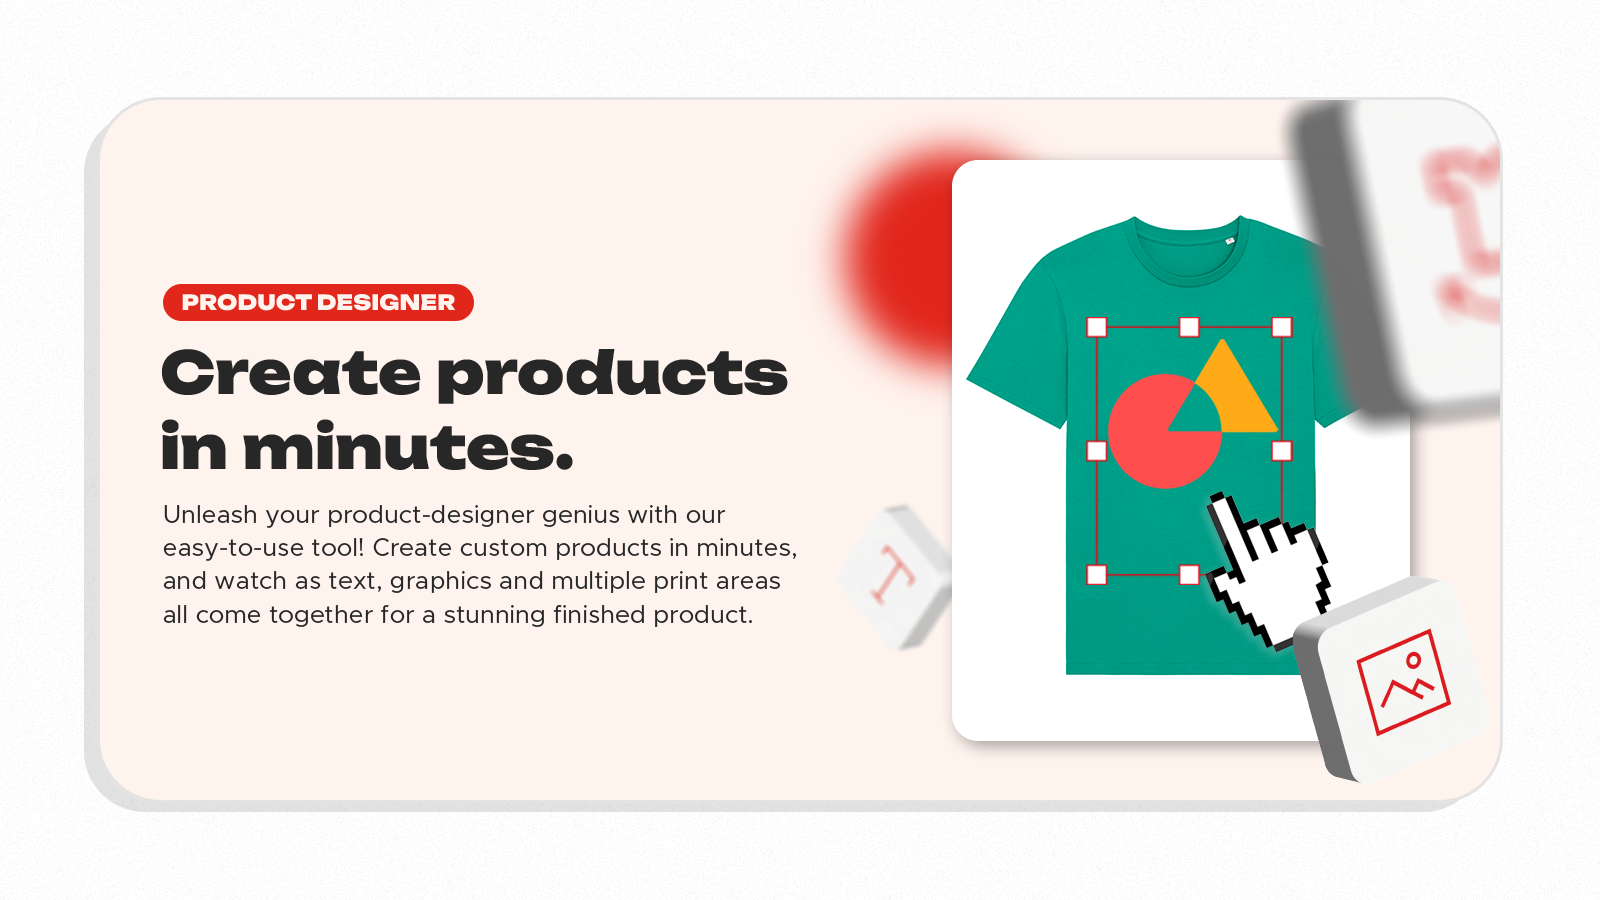 Crie produtos em minutos. Um designer de produtos fácil de usar.